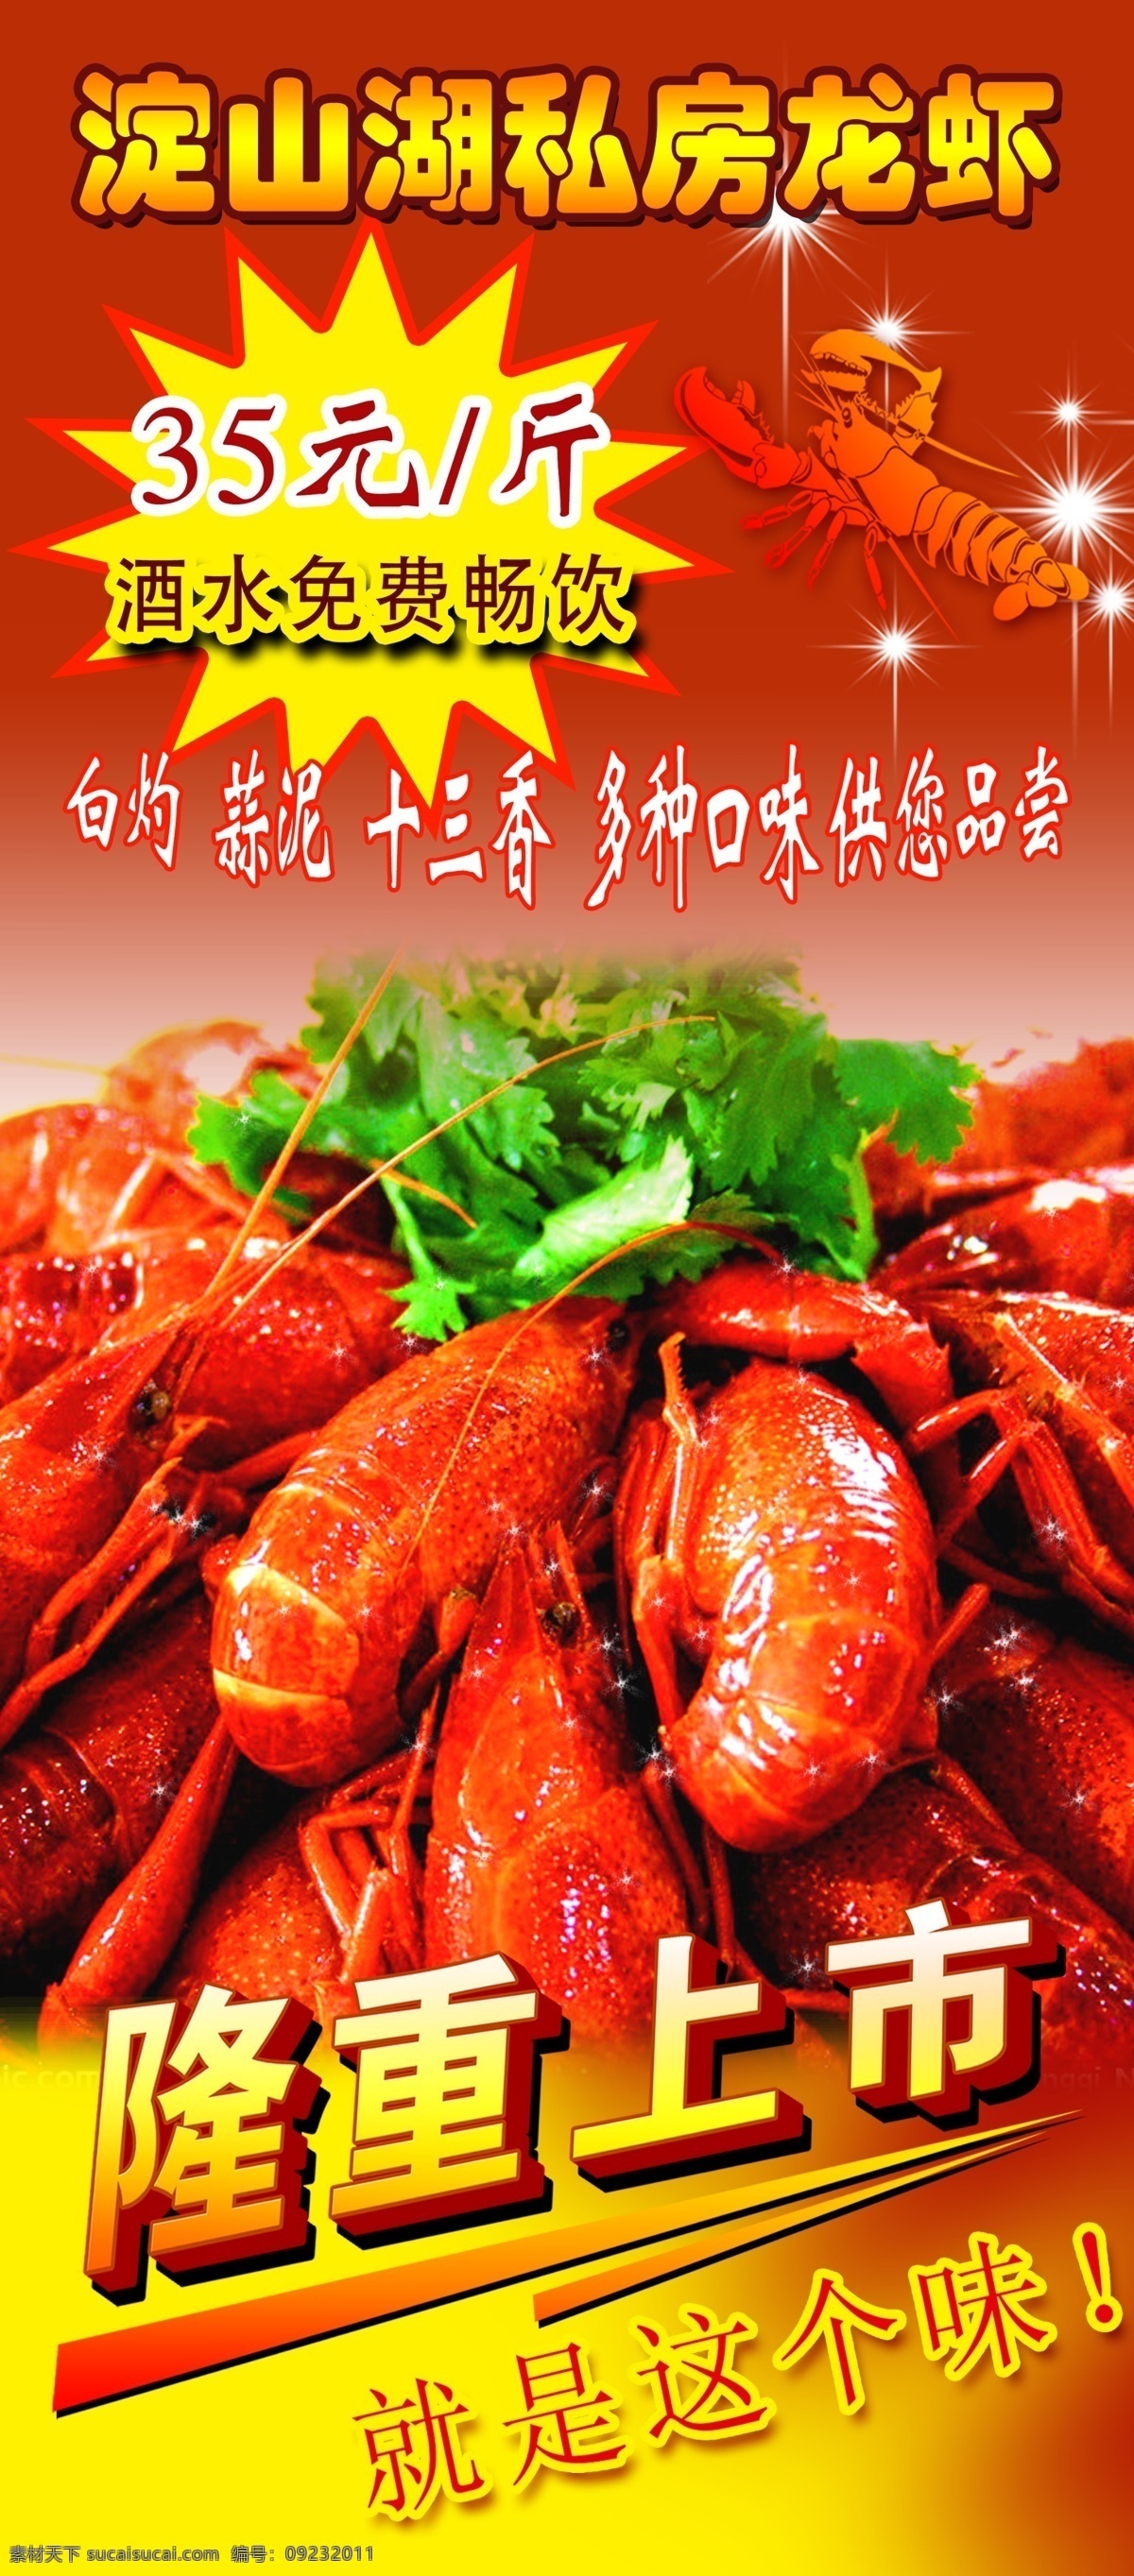 小 龙虾 促销 宣传海报 小龙虾 宣传 展架 海报 红色